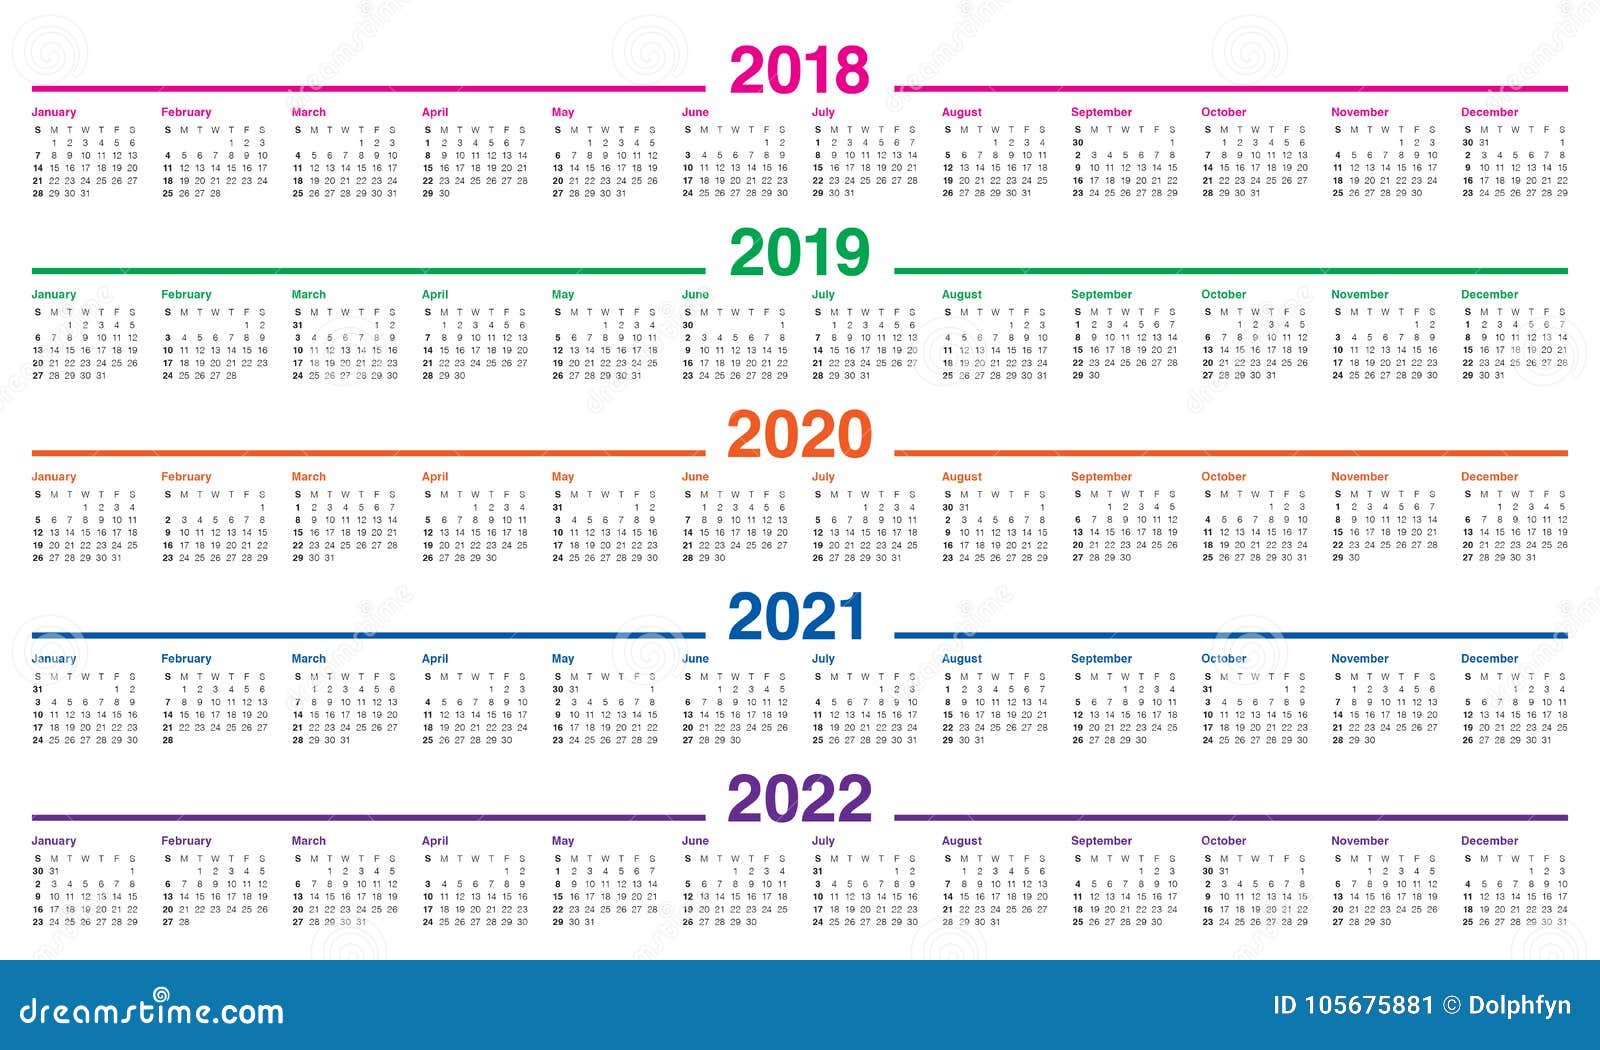 5 г 2018 2019. Календарь 2018 2019 2020 2021. Календарь 2018 2019 2020 2021 2022 2023. Календарная сетка 2022 2023. Календарь 2021 2022 на одном листе.